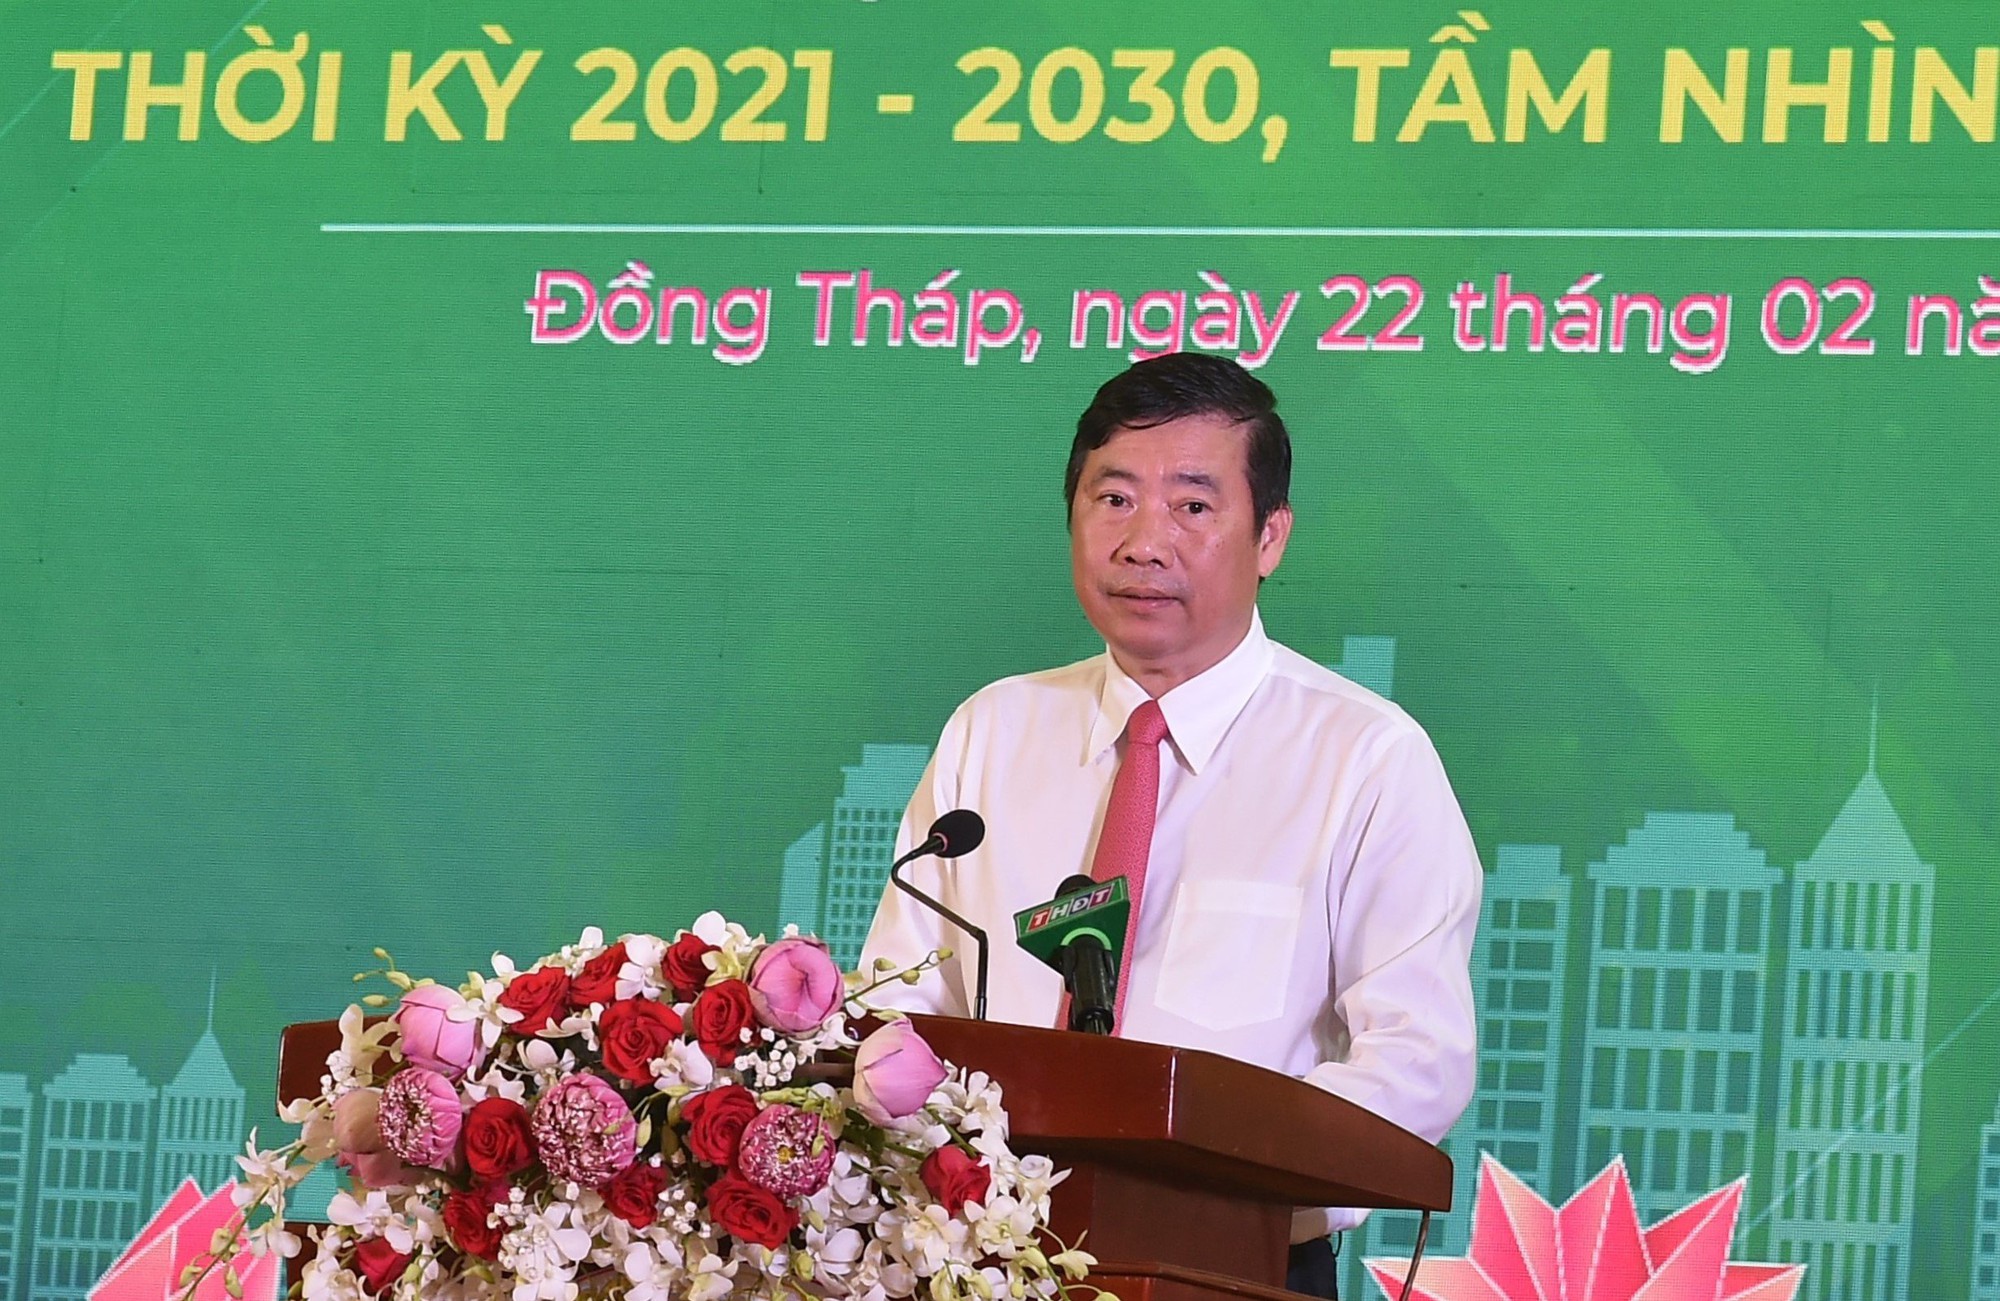 Chủ tịch UBND tỉnh Đồng Tháp Phạm Thiện Nghĩa phát biểu tại hội nghị - Ảnh: VGP/Trần Mạnh